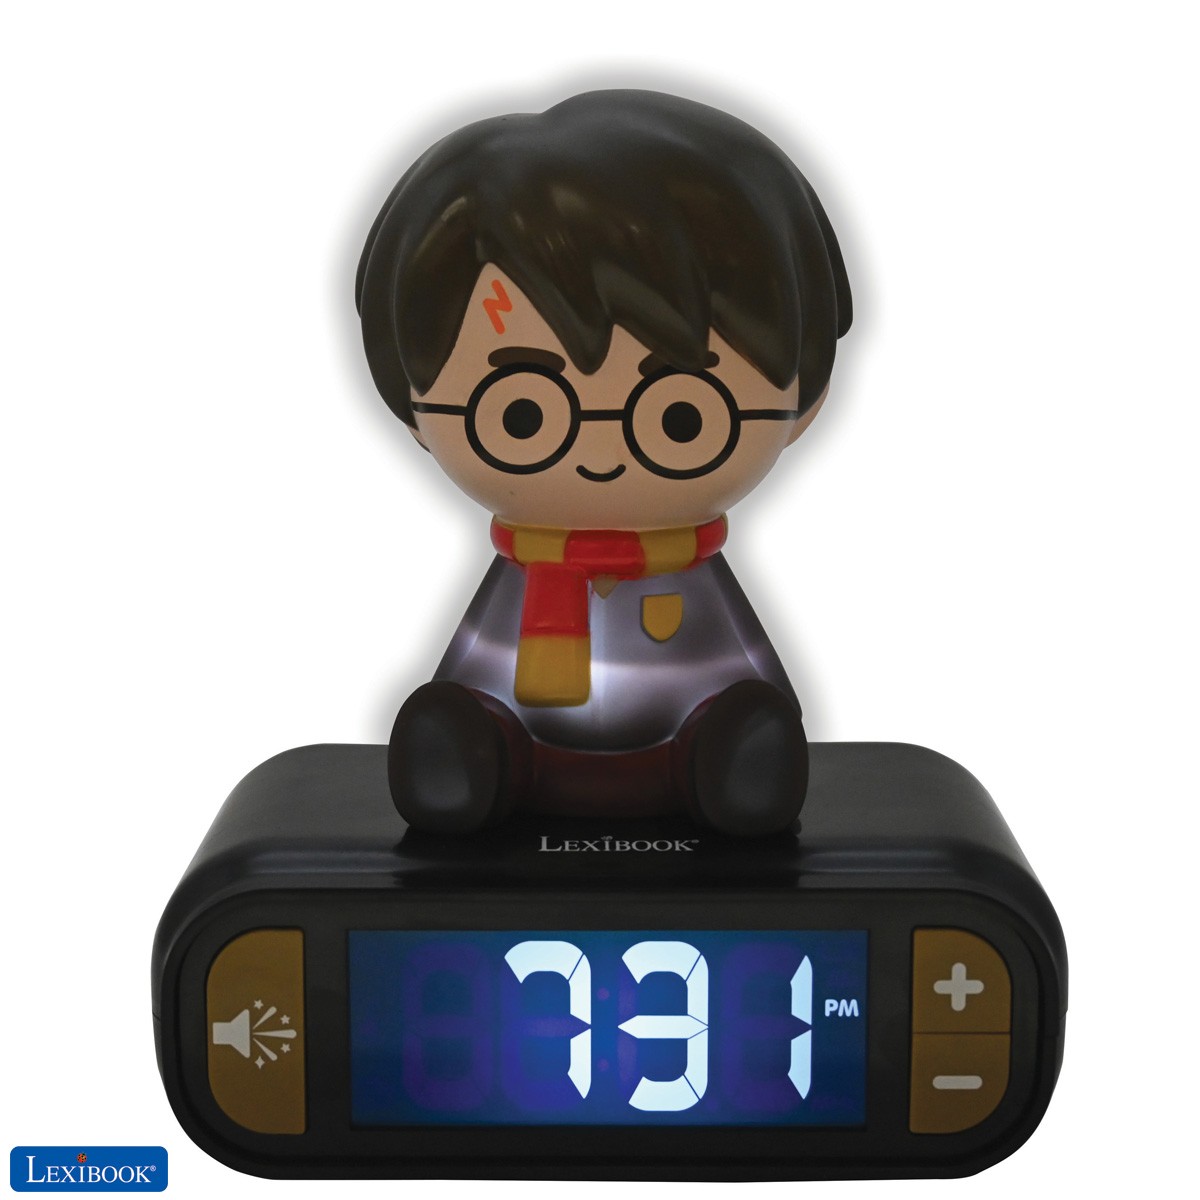 Despertador Harry Potter con pantalla LCD digital y luz de noche integrada